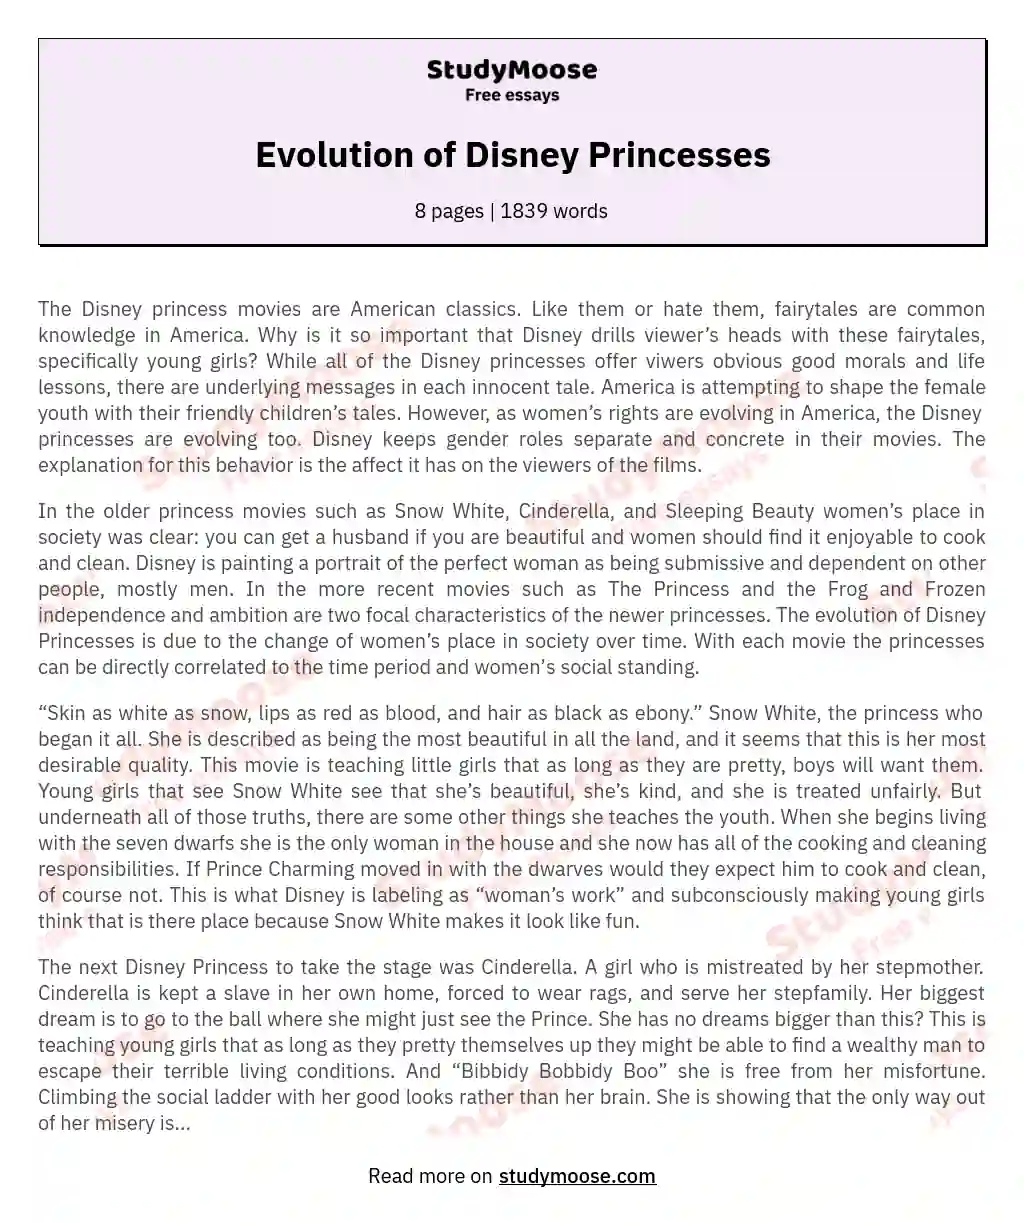 Evolution of Disney Princesses essay